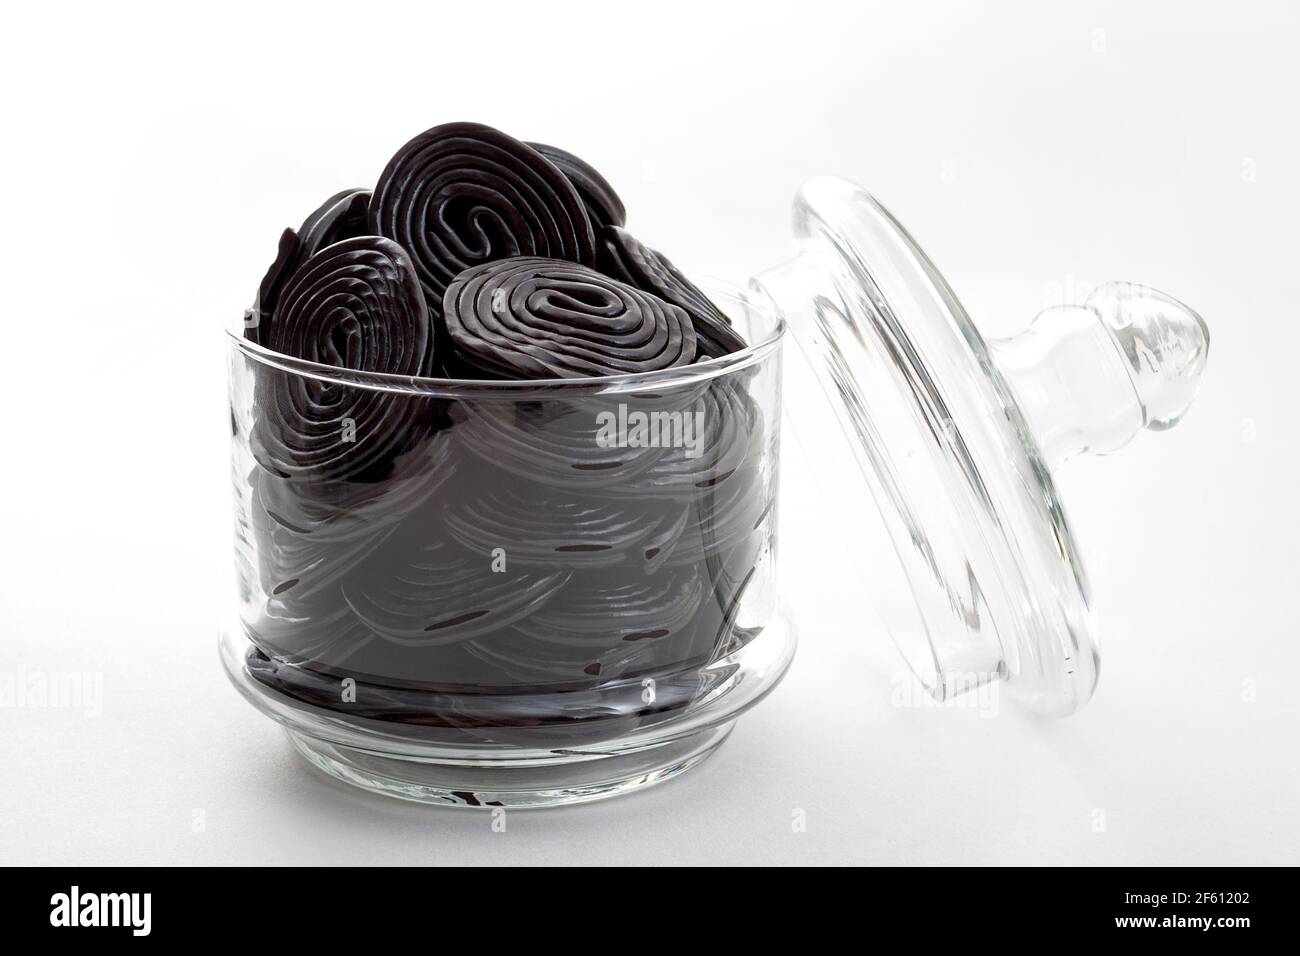 Spirales de réglisse noires, bonbons et délicieux dessert concept avec roues de réglisse qui sont aromatisées avec l'extrait de la racine du Glycyr Banque D'Images